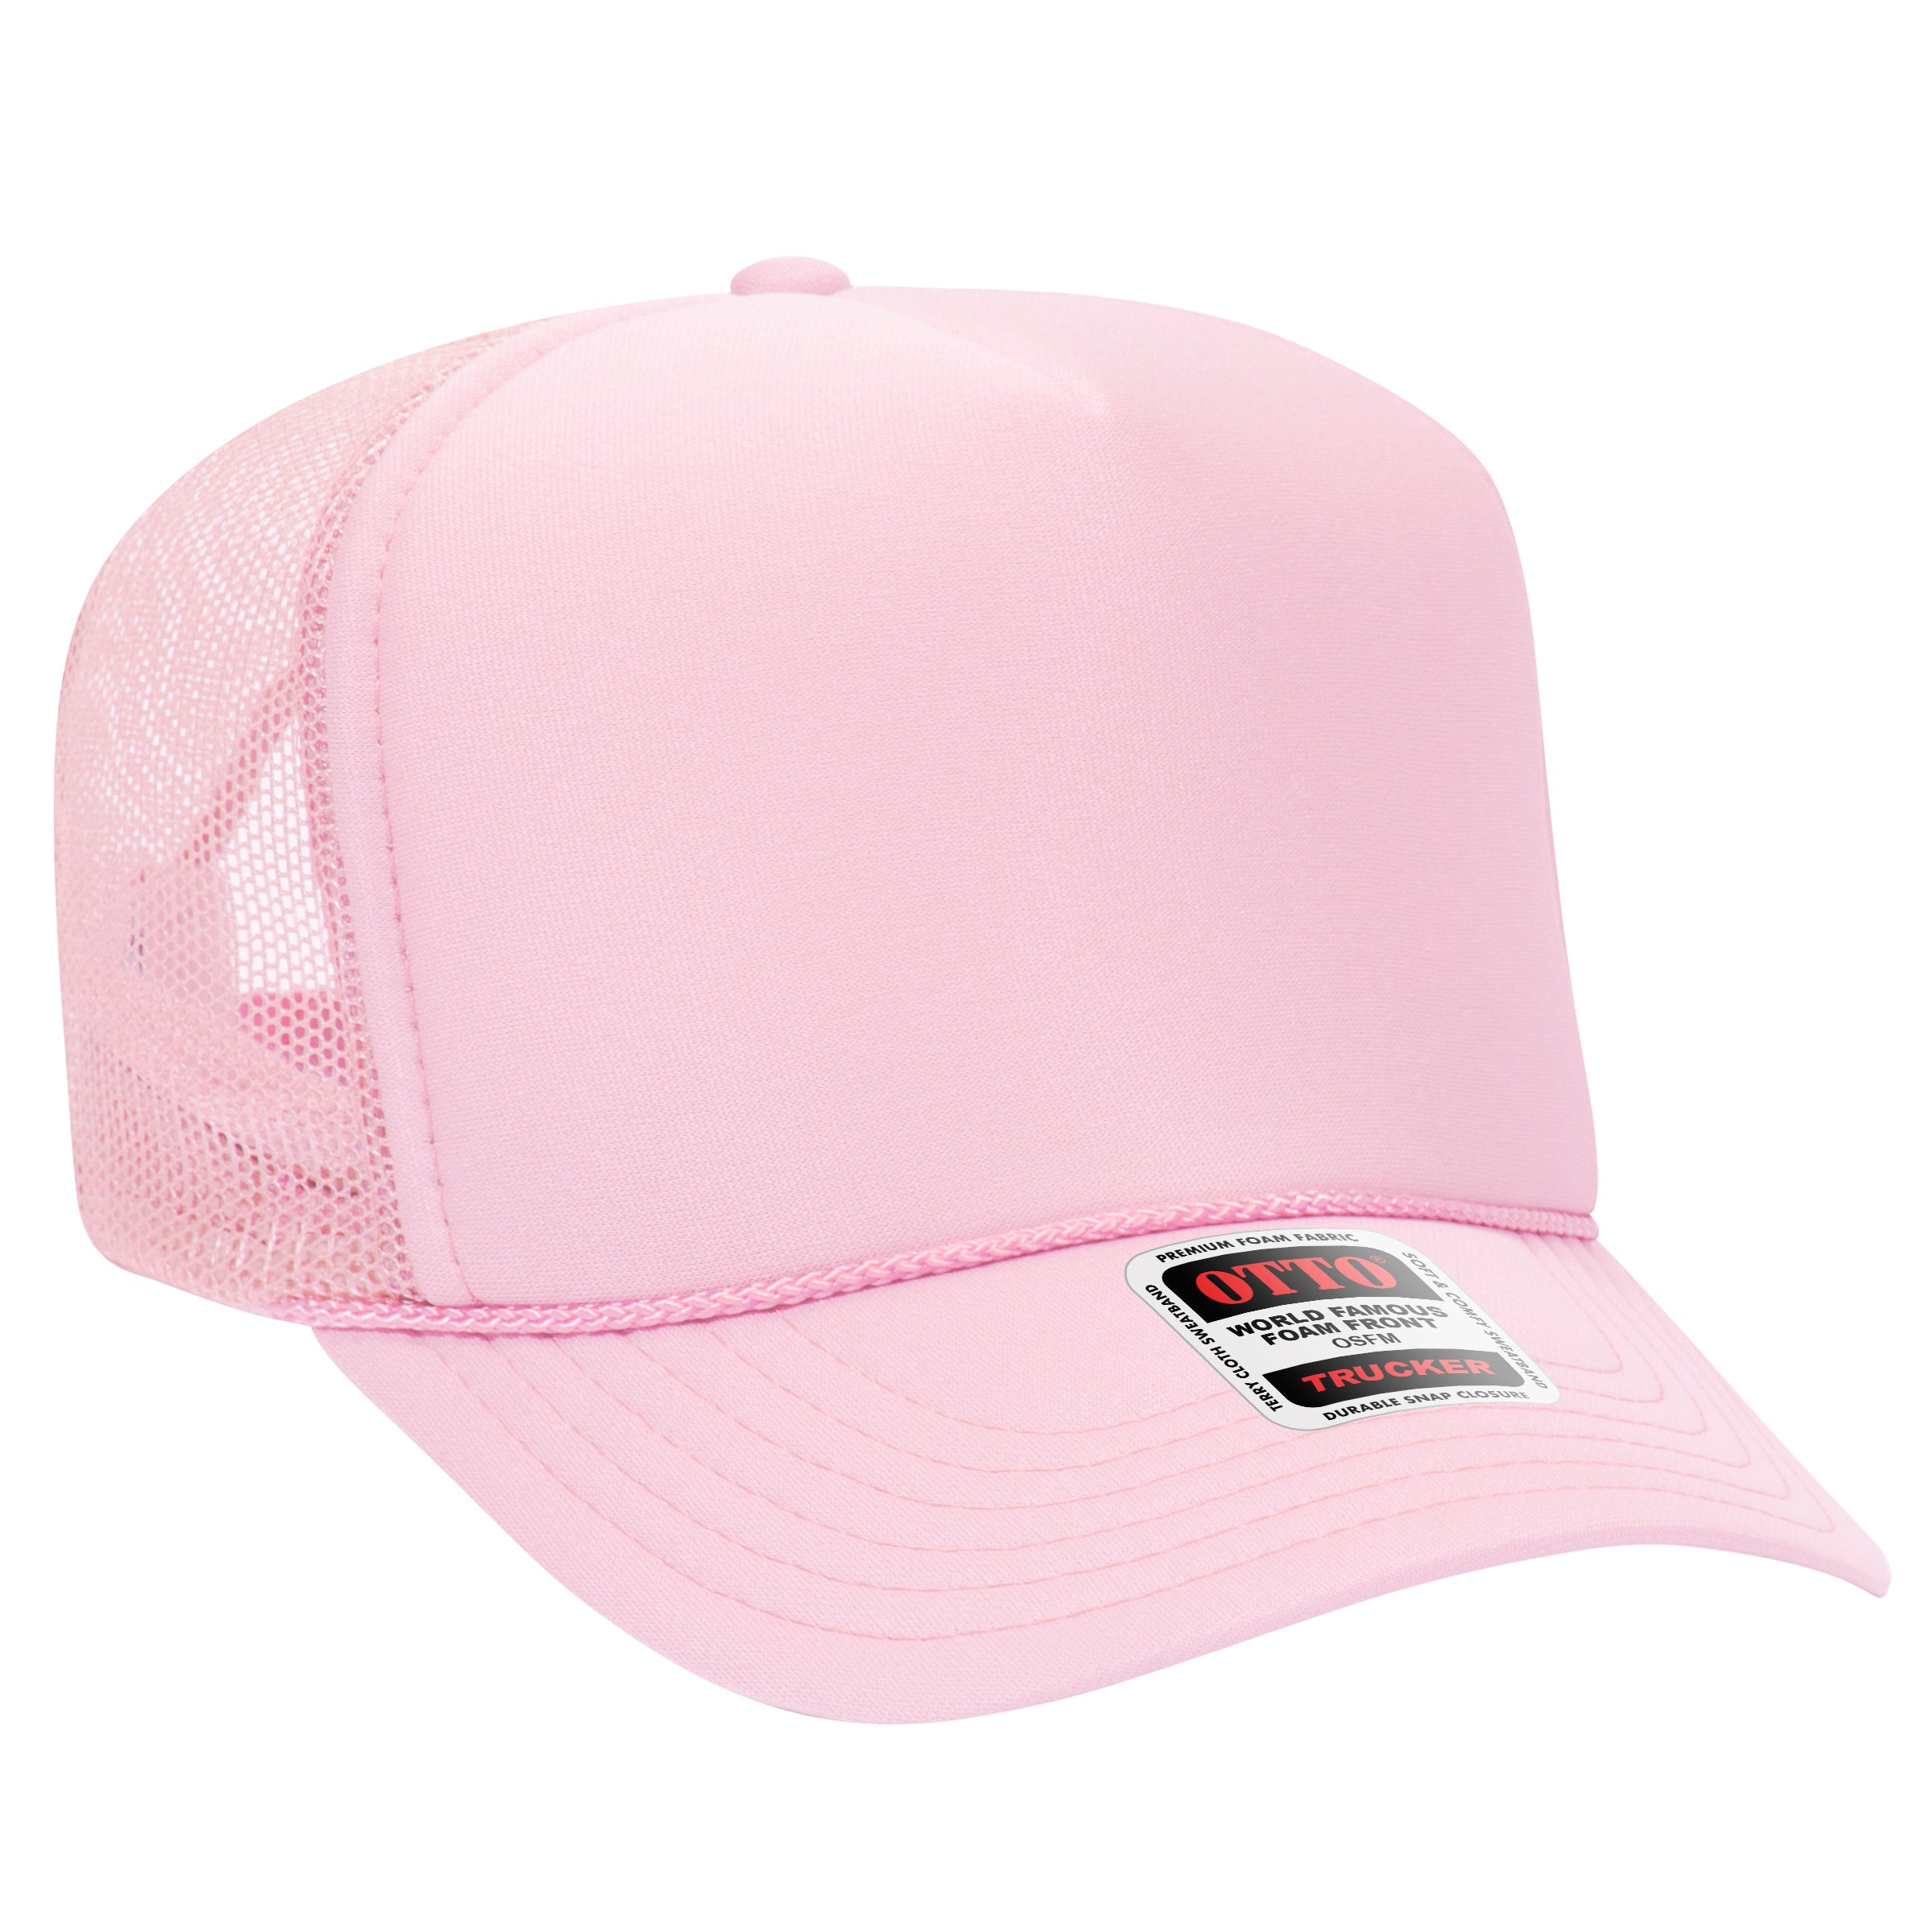 Soft Pink color variant